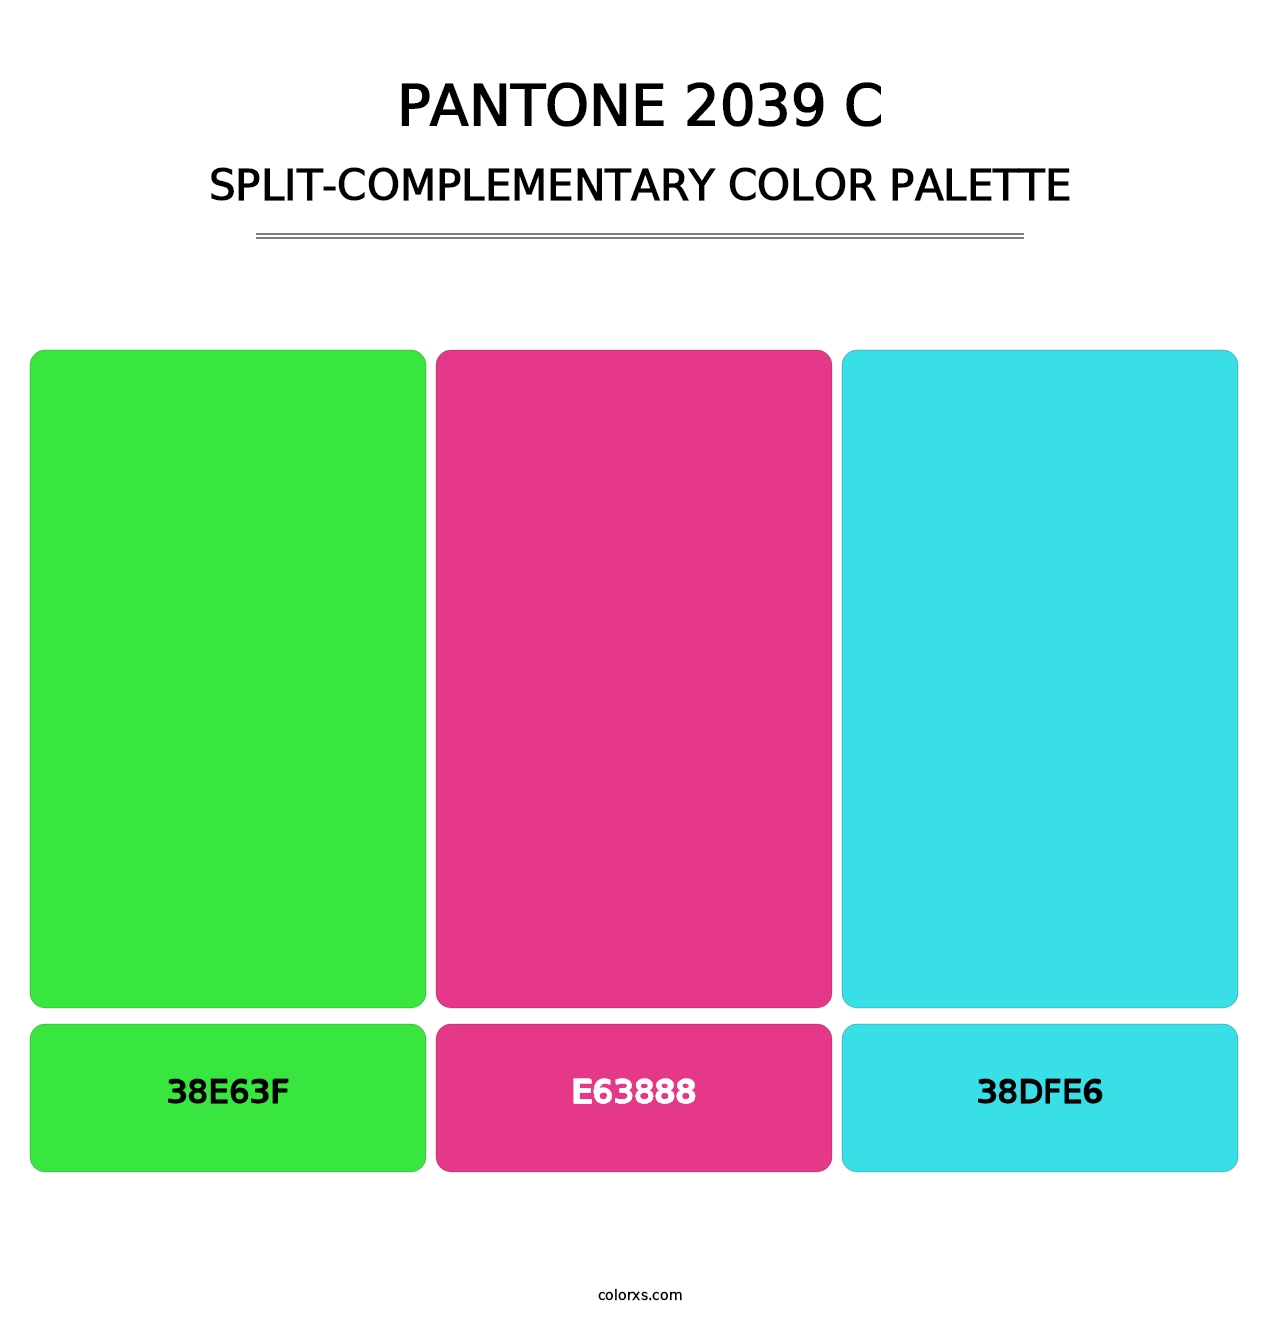 PANTONE 2039 C - Split-Complementary Color Palette